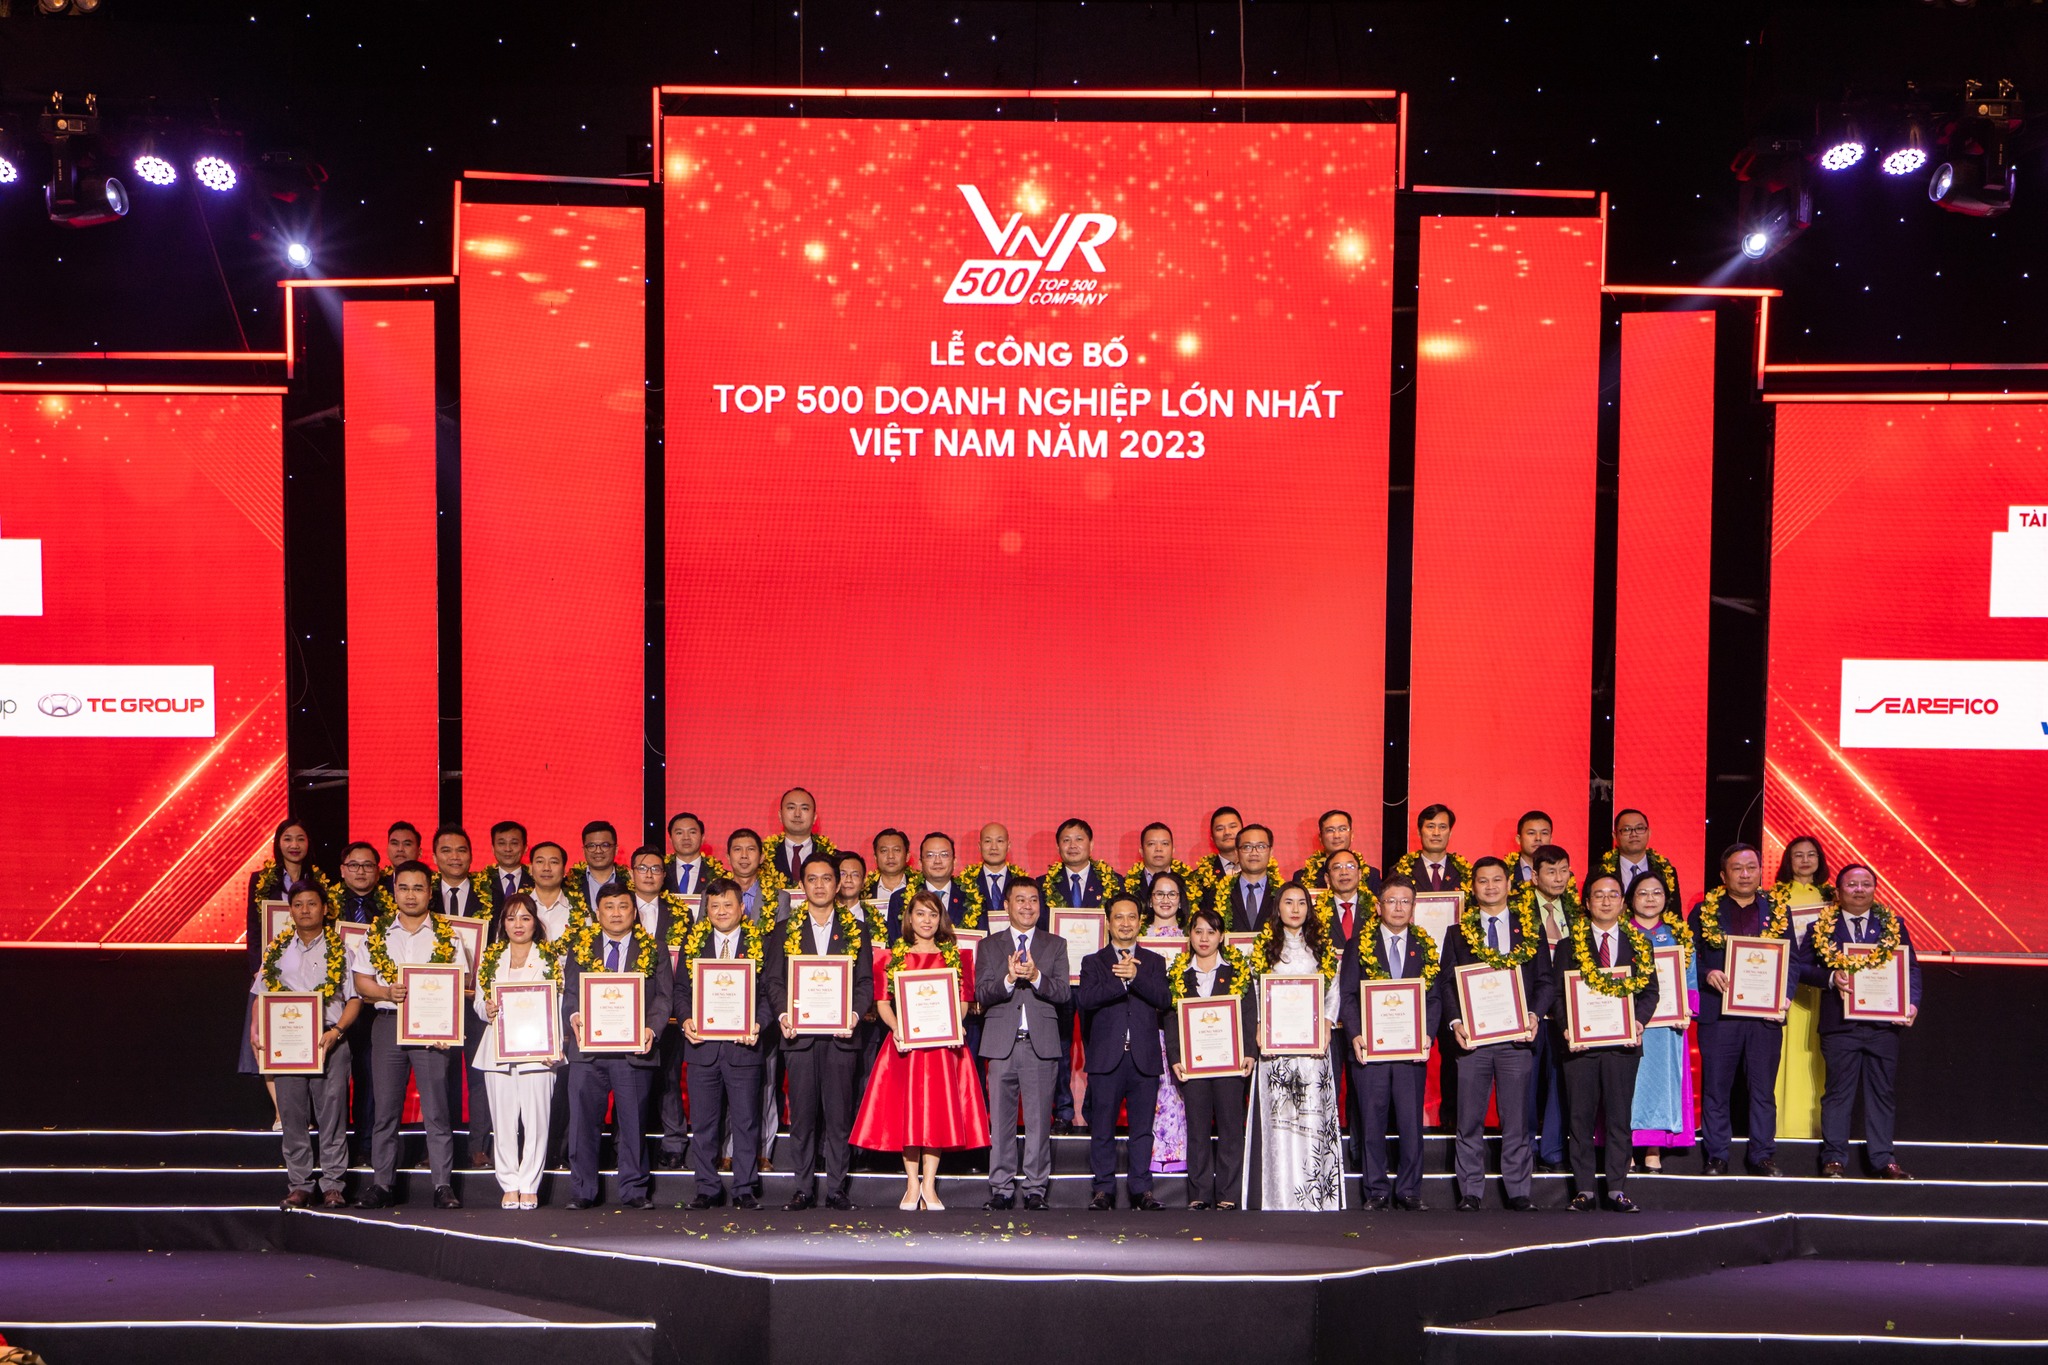 Giải thưởng này trở nên ý nghĩa hơn khi được vinh danh nhân dịp Dai-ichi Life Việt Nam đánh dấu mốc son chào mừng 17 năm thành lập Dai-ichi Life Việt Nam (18/1/2007 – 18/1/2024), minh chứng tầm vóc, vị thế, tiềm lực tài chính và uy tín thương hiệu Nhật Bản trong chặng đường 17 năm hình thành và phát triển tại Việt Nam